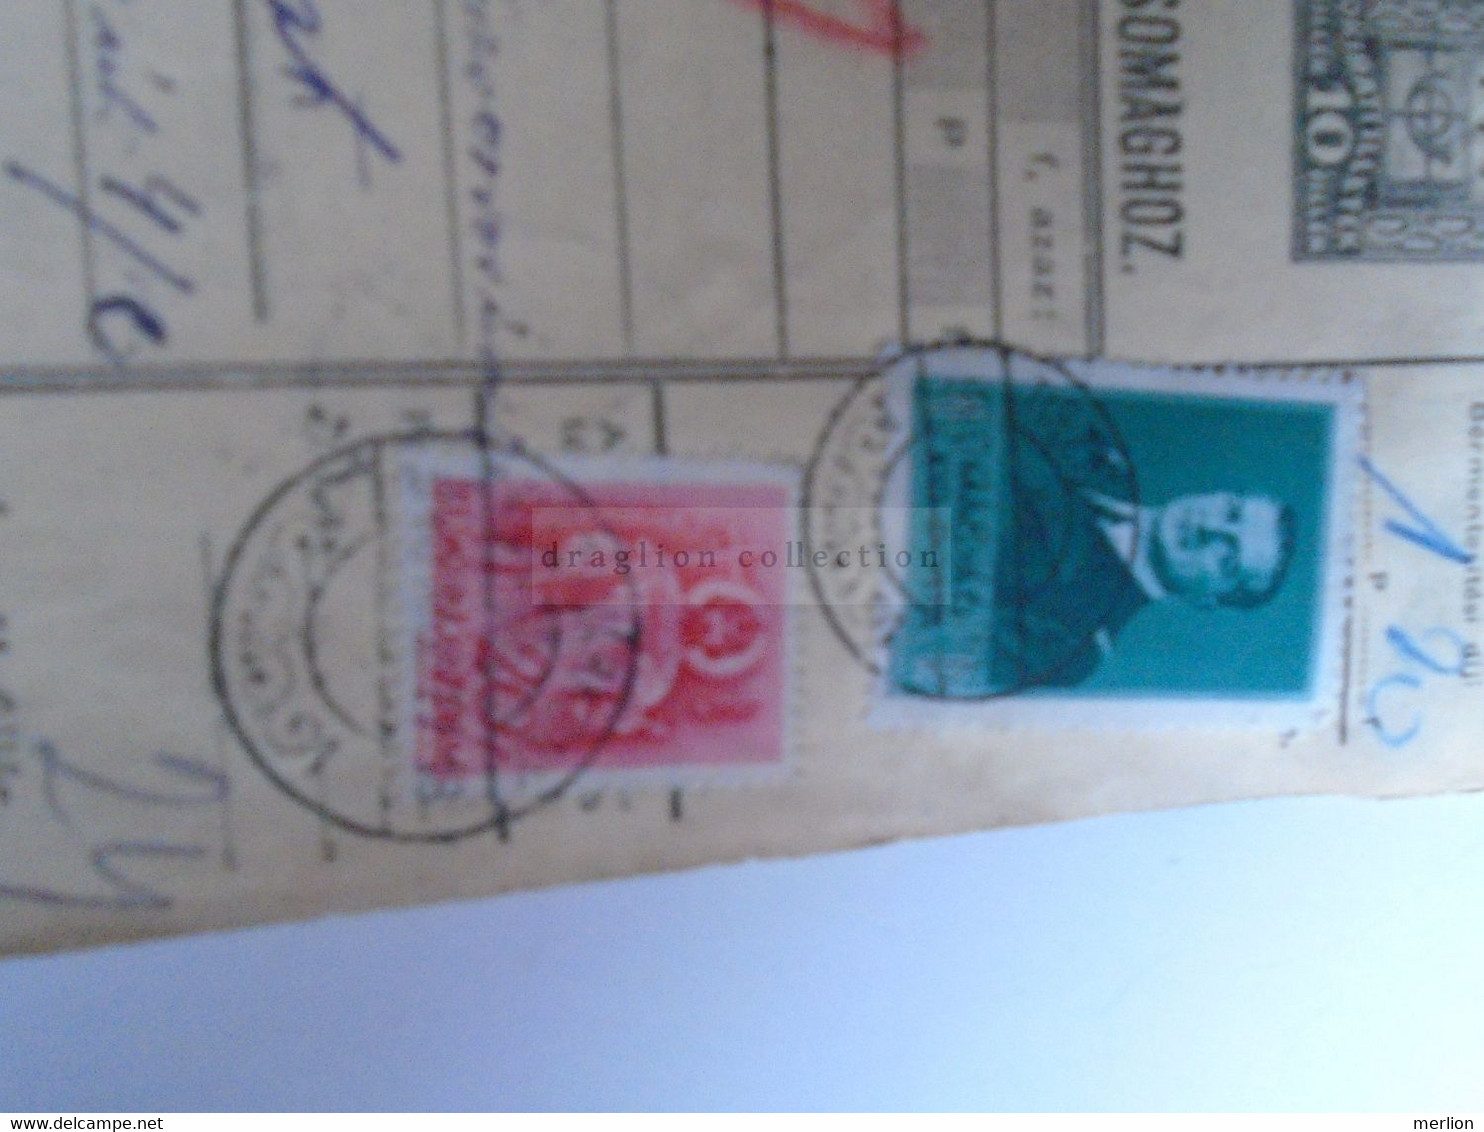 D187451    Parcel Card  (cut) Hungary 1940 TISZAVÁRKONY - Colis Postaux